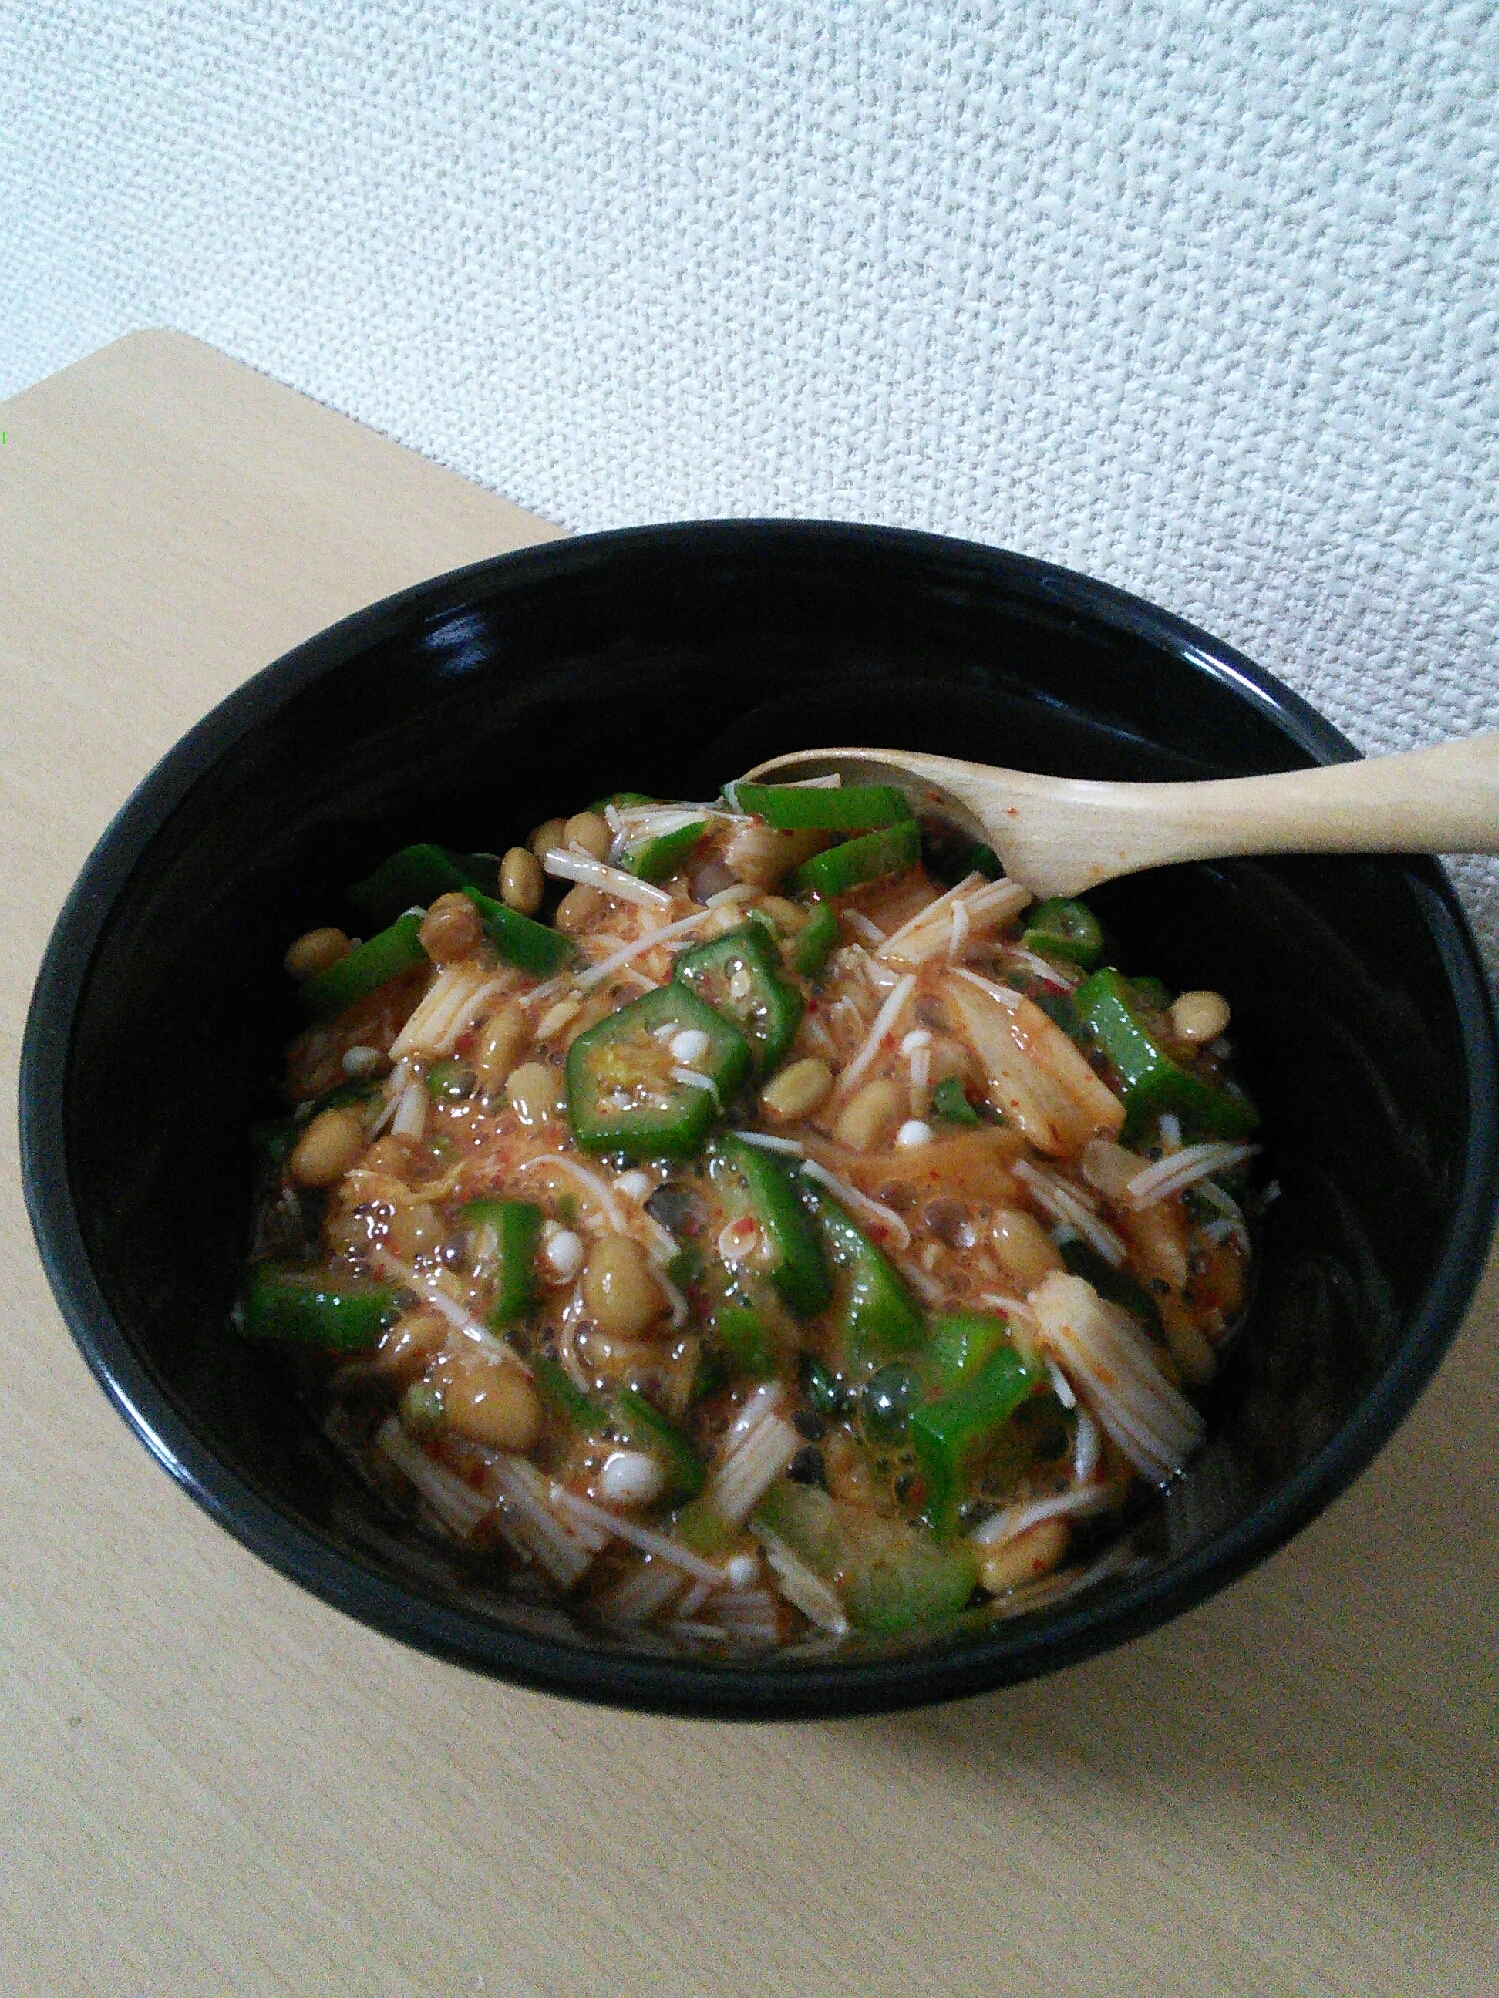 ズボラ飯♪豆腐のキムチ納豆のせ⭐ダイエットにも♡